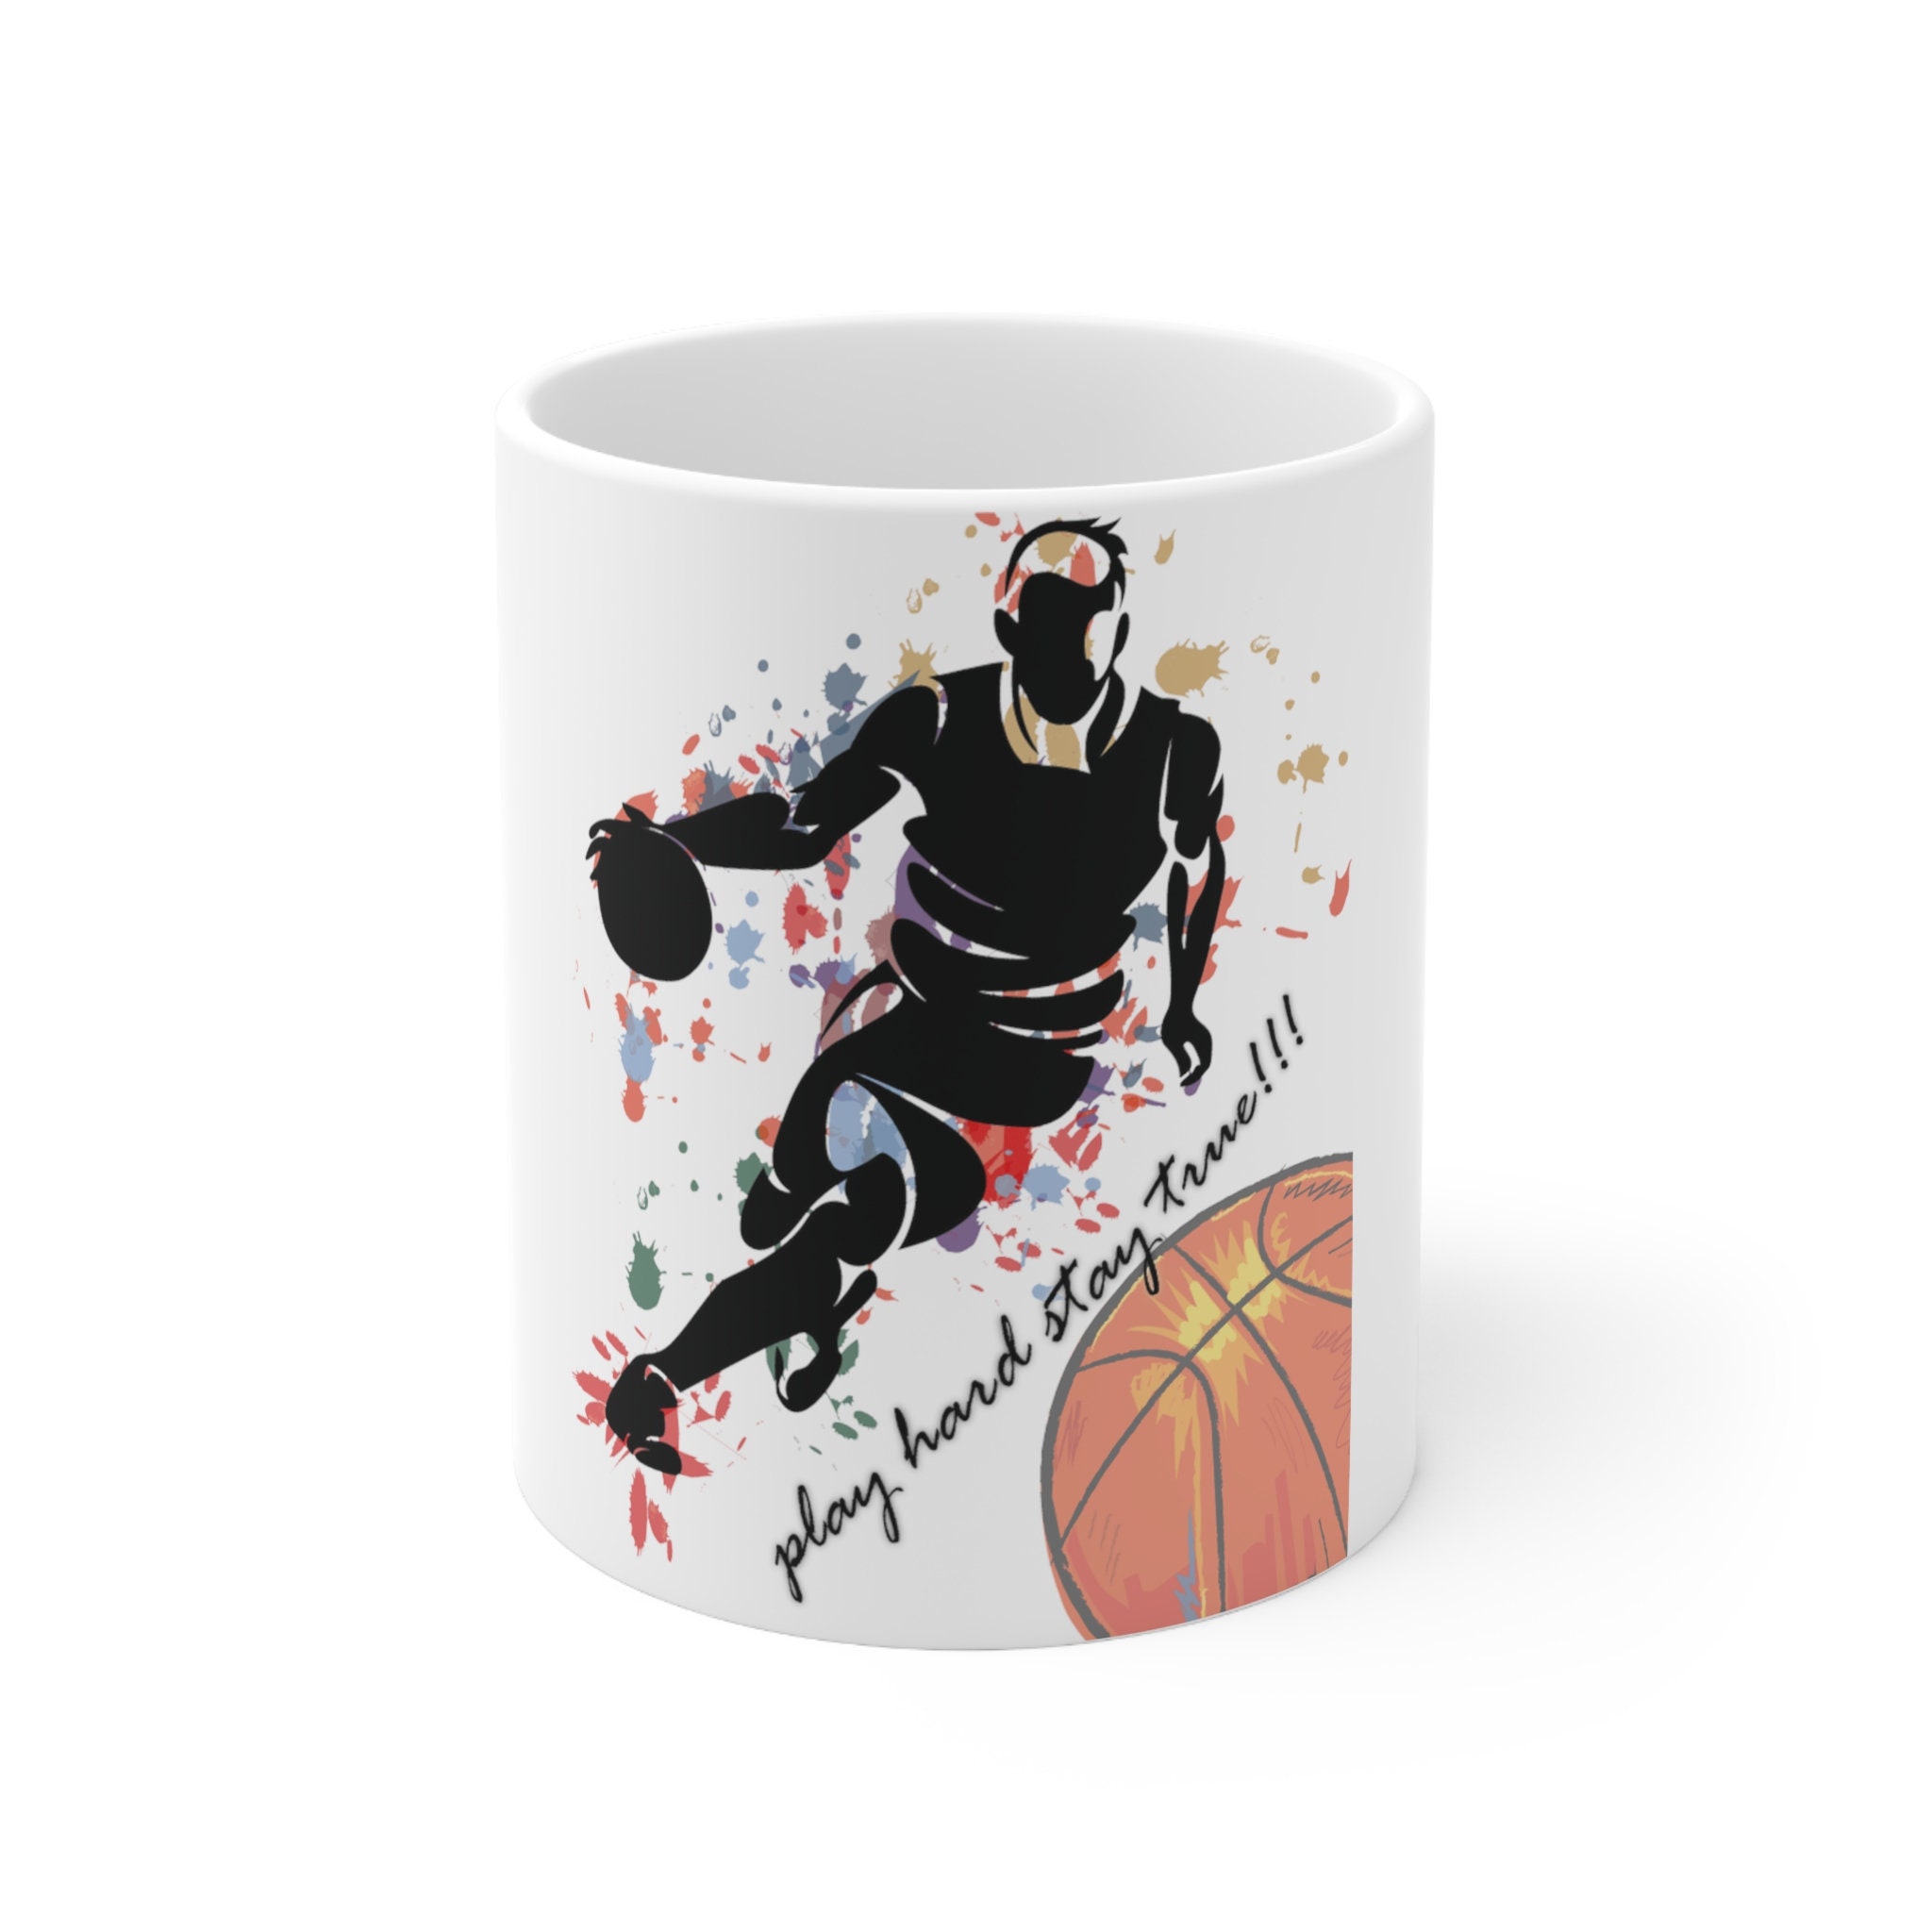 Discover Street Basketball Shadow Player Coffee Gift Mug